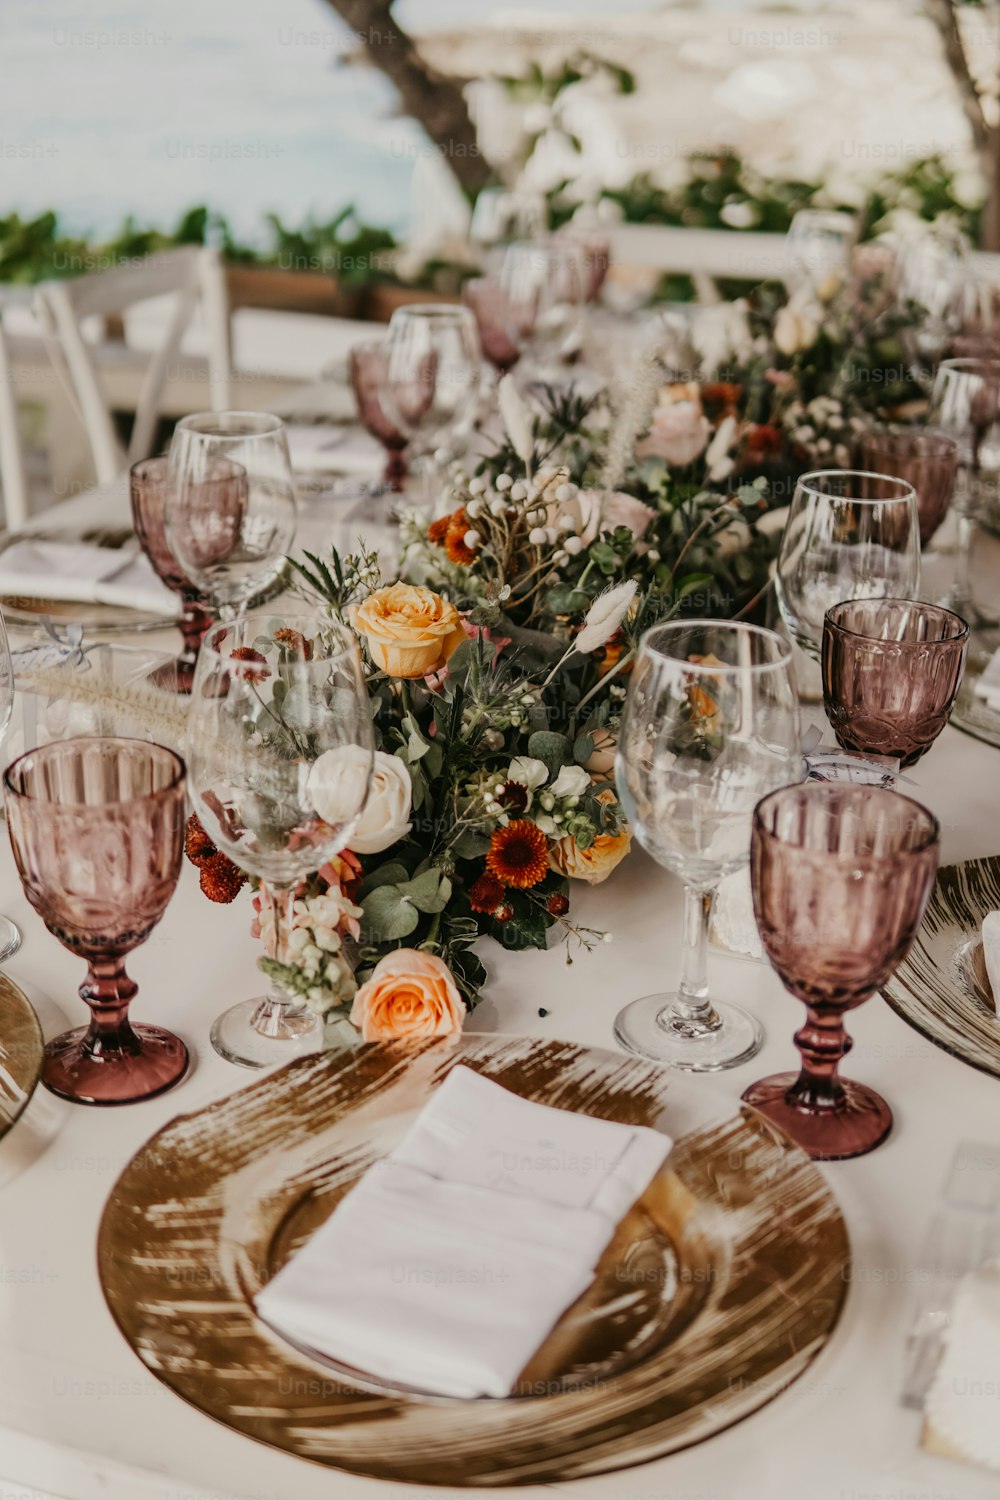 une table est dressée avec des verres à vin, des assiettes et des serviettes